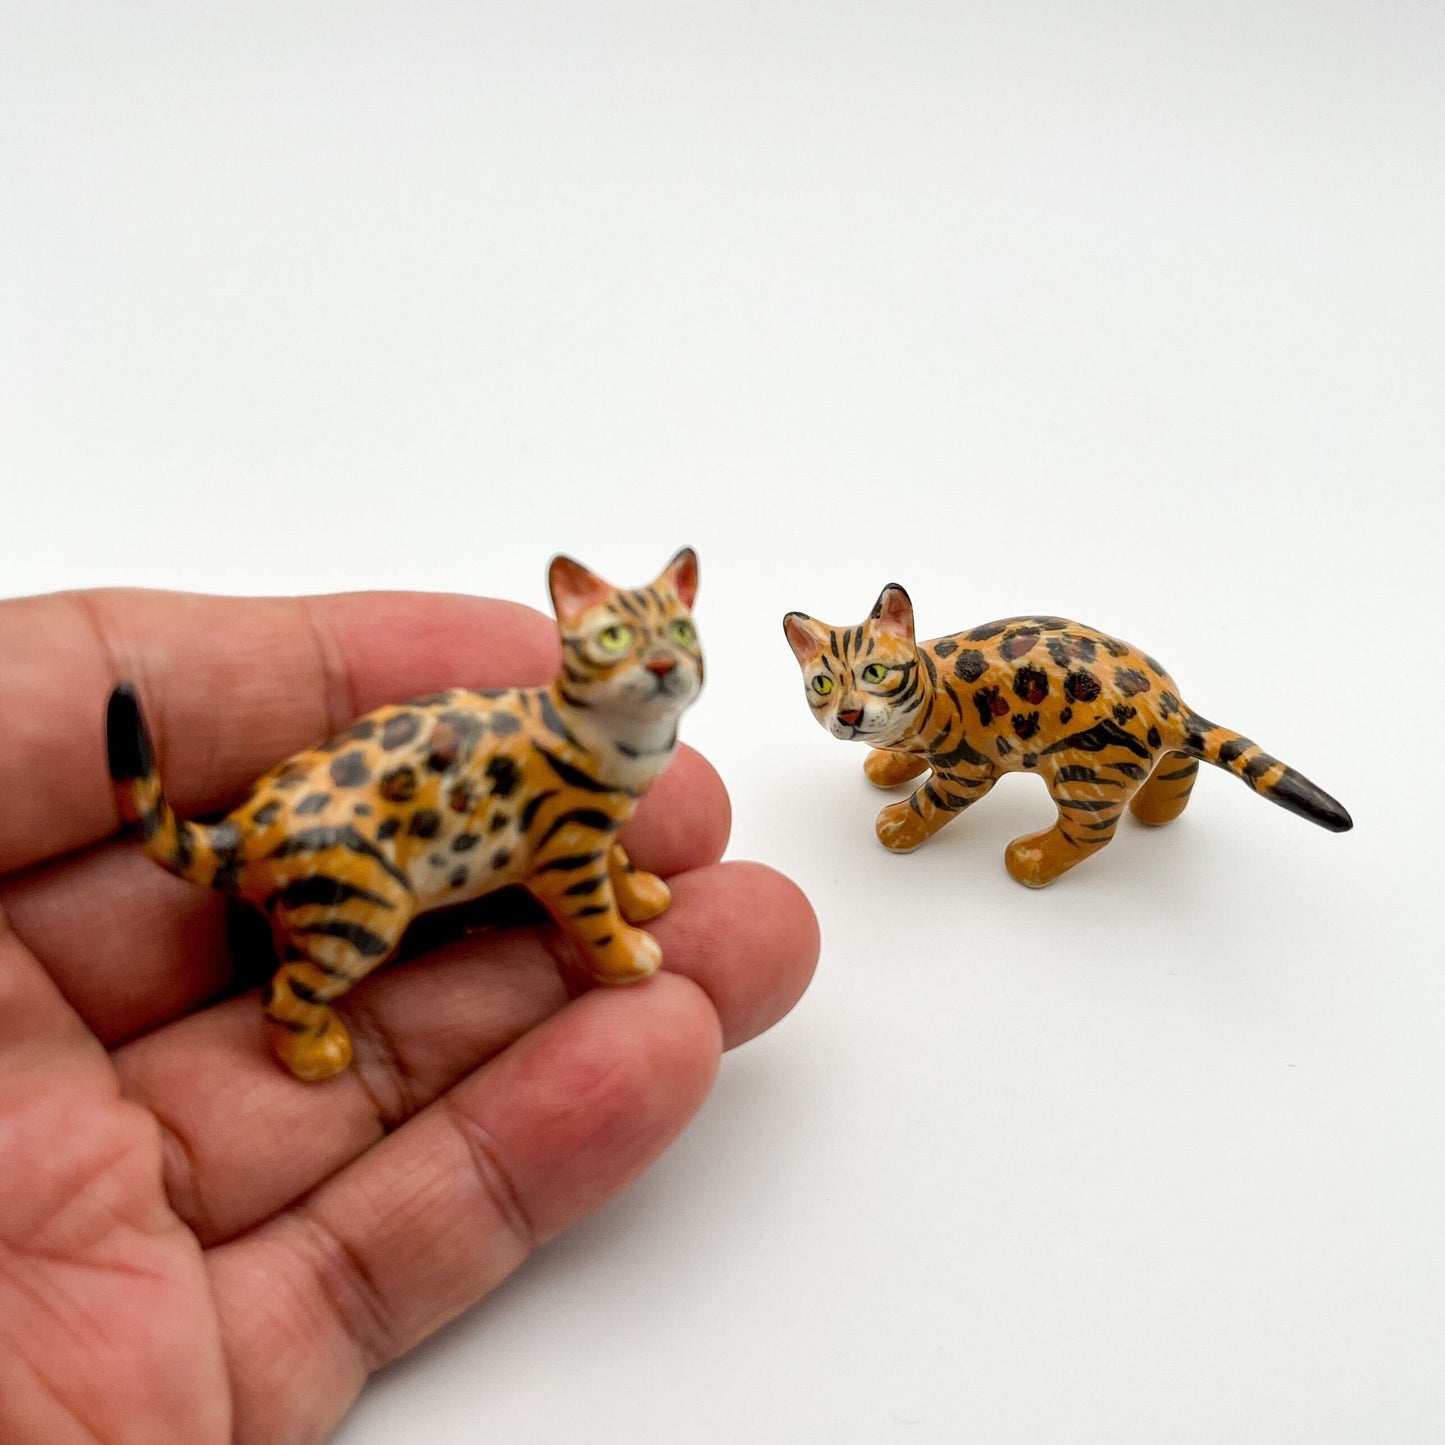 Exquisite Bengal Cat Figurines